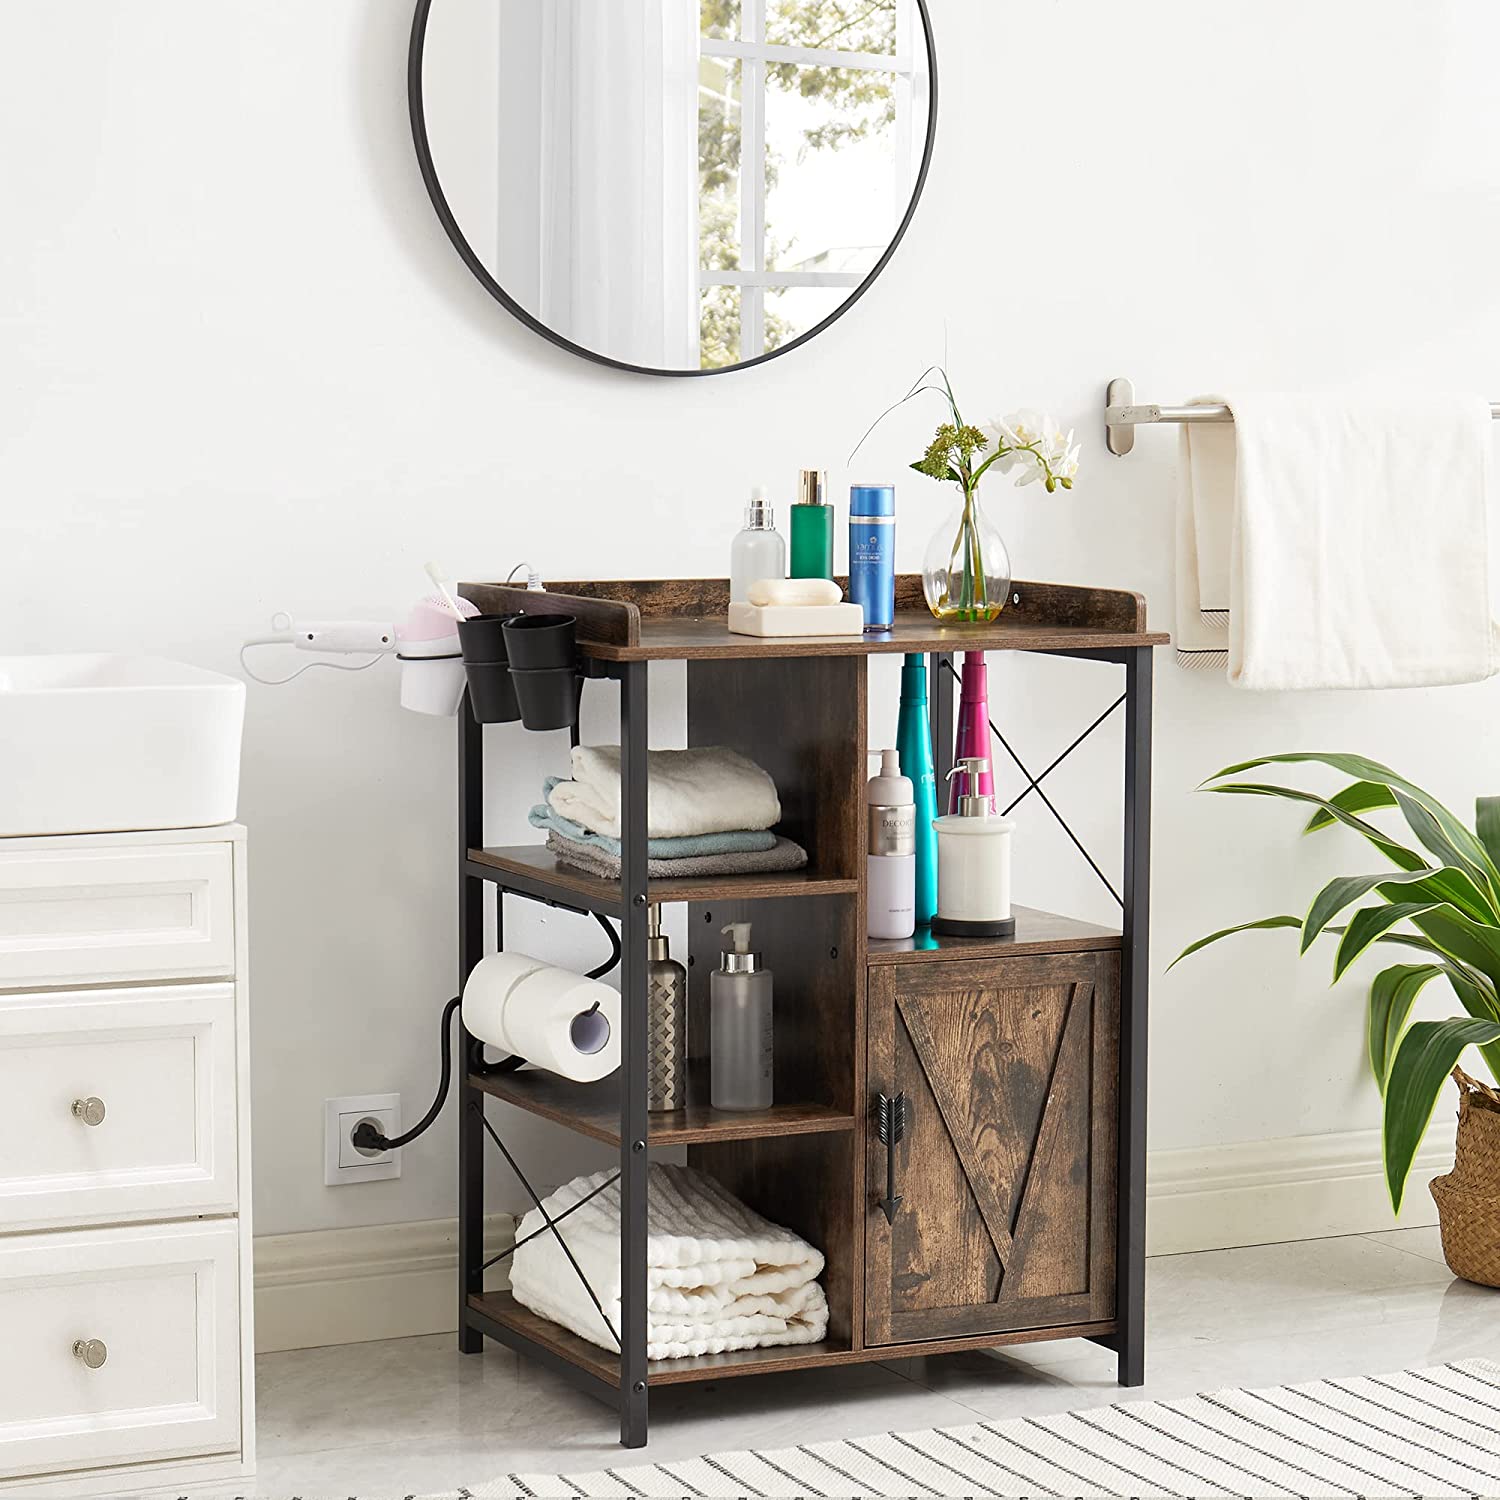 VECELO Floor Cabinet, Freestanding Storage Organizer with Door & 3 Shelves for Bathroom, Kitchen,Hallway